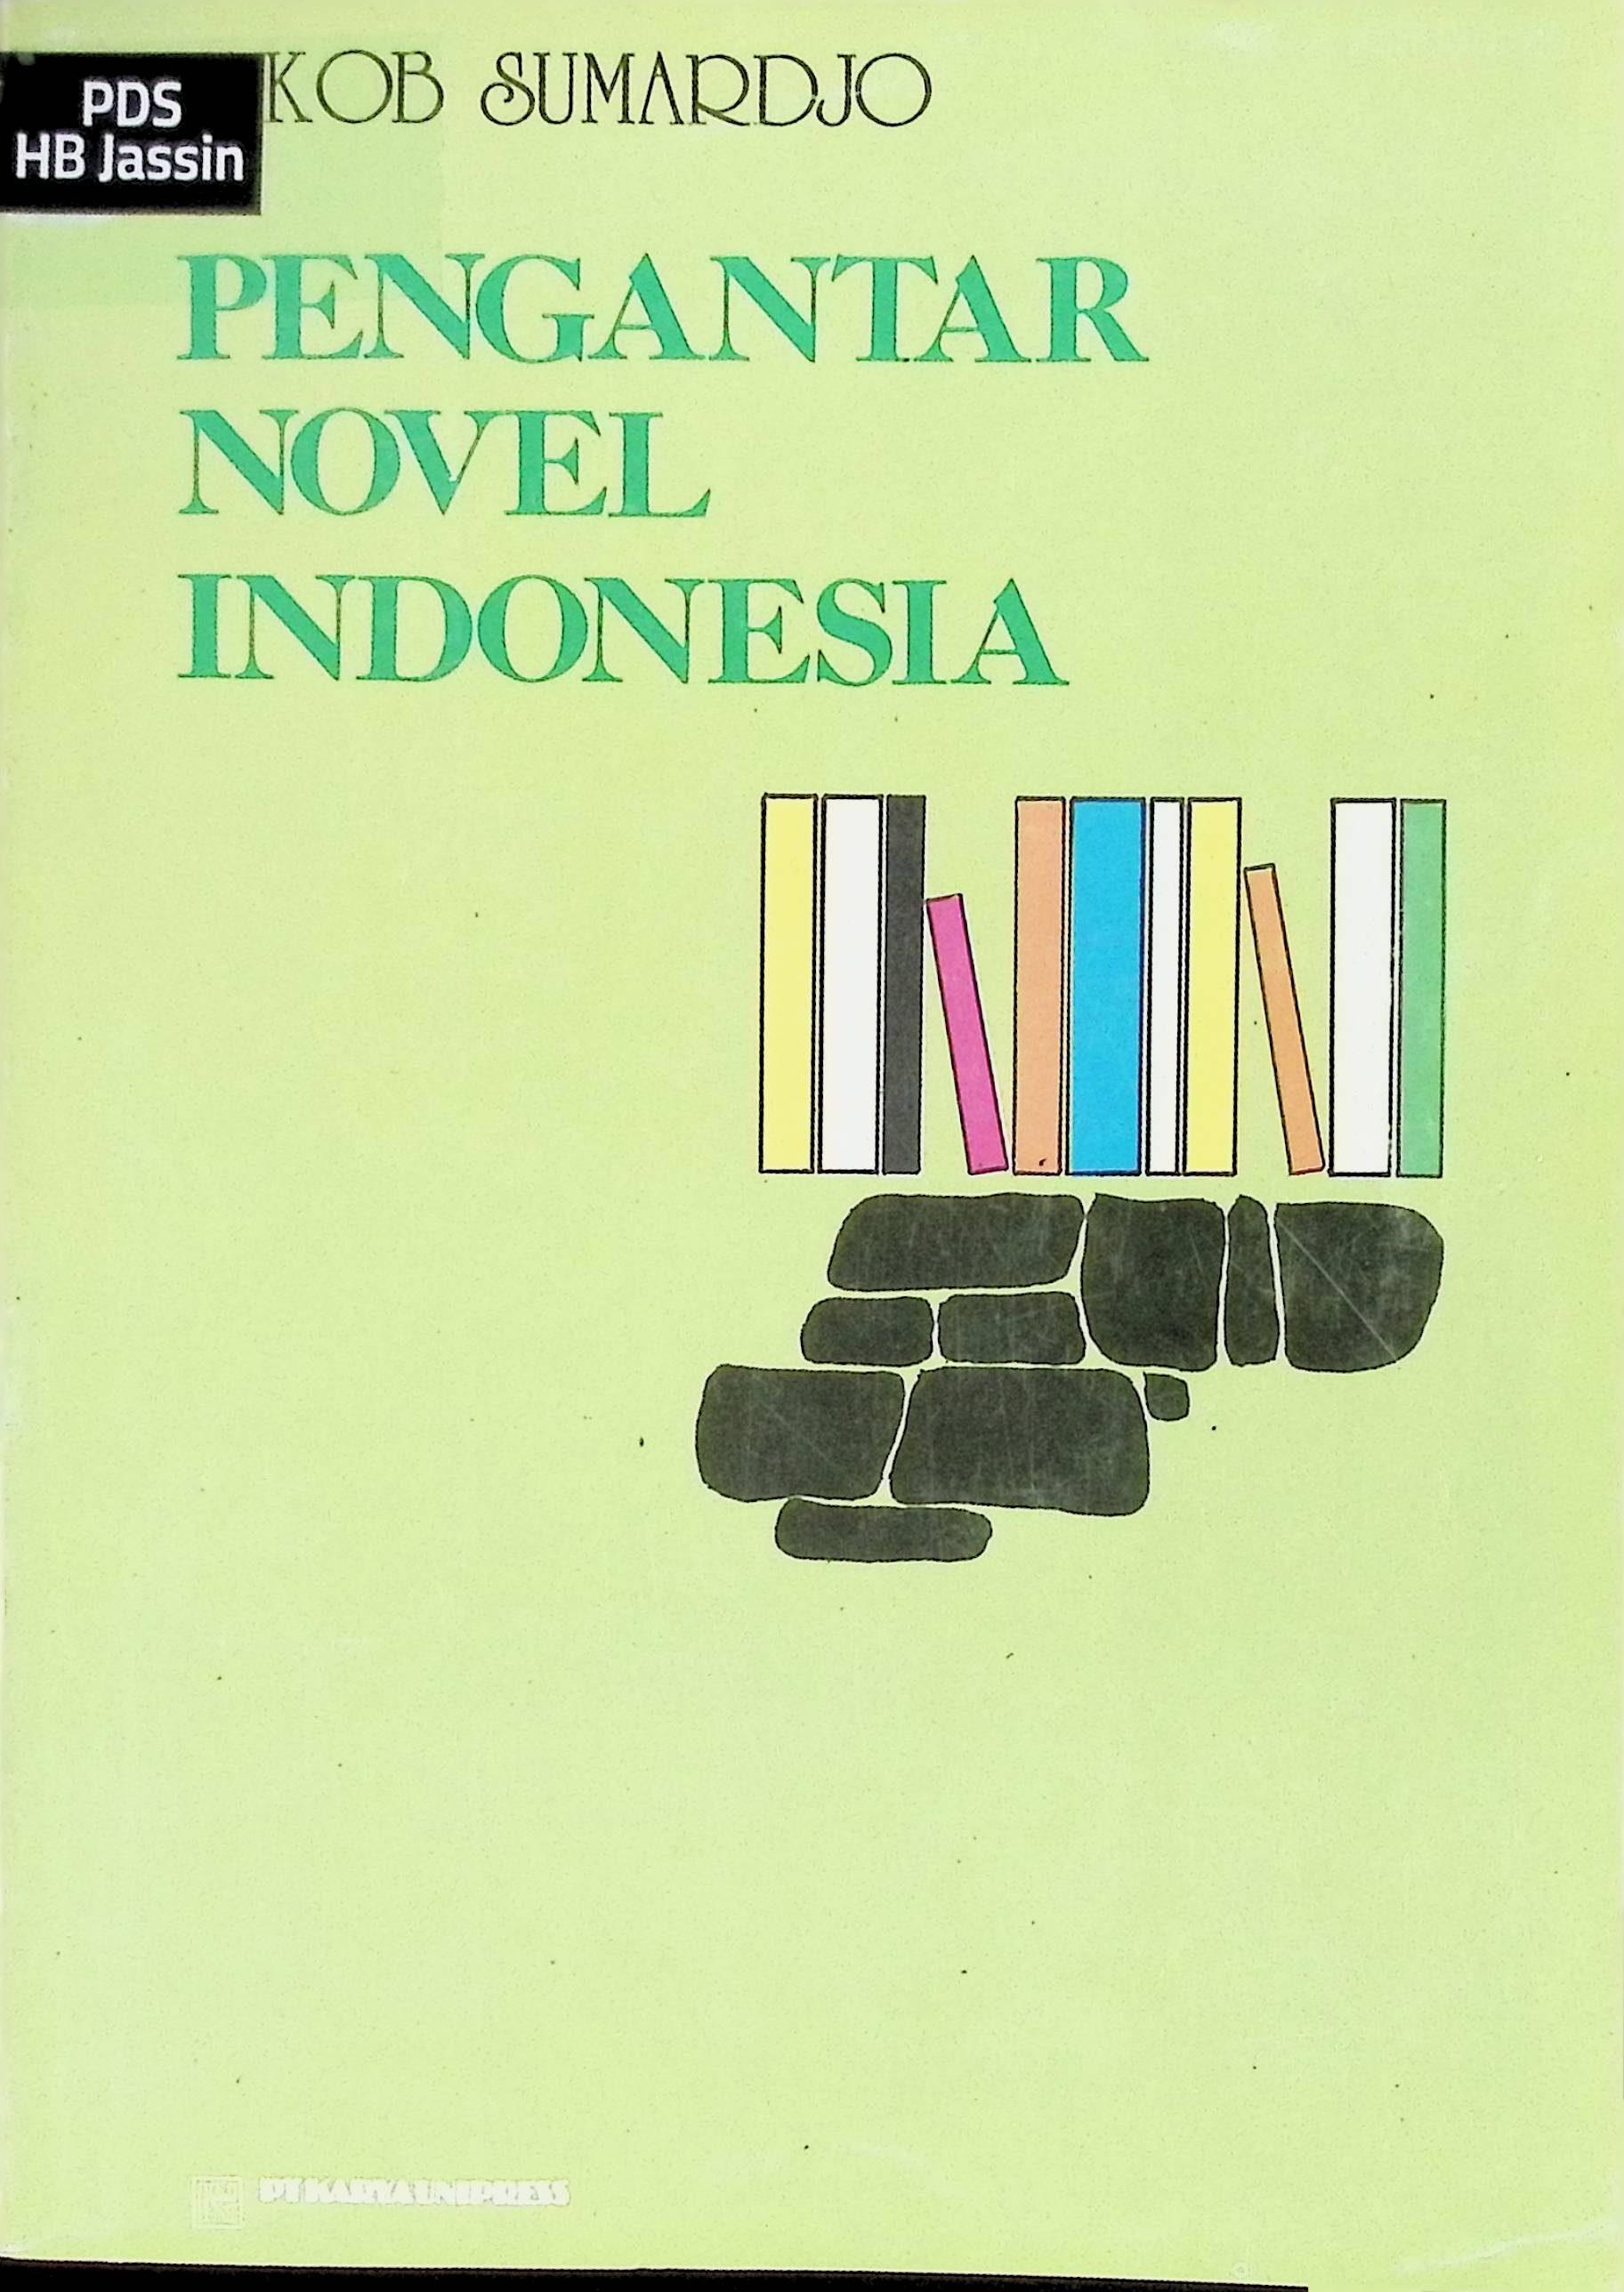 Pengantar novel Indonesia